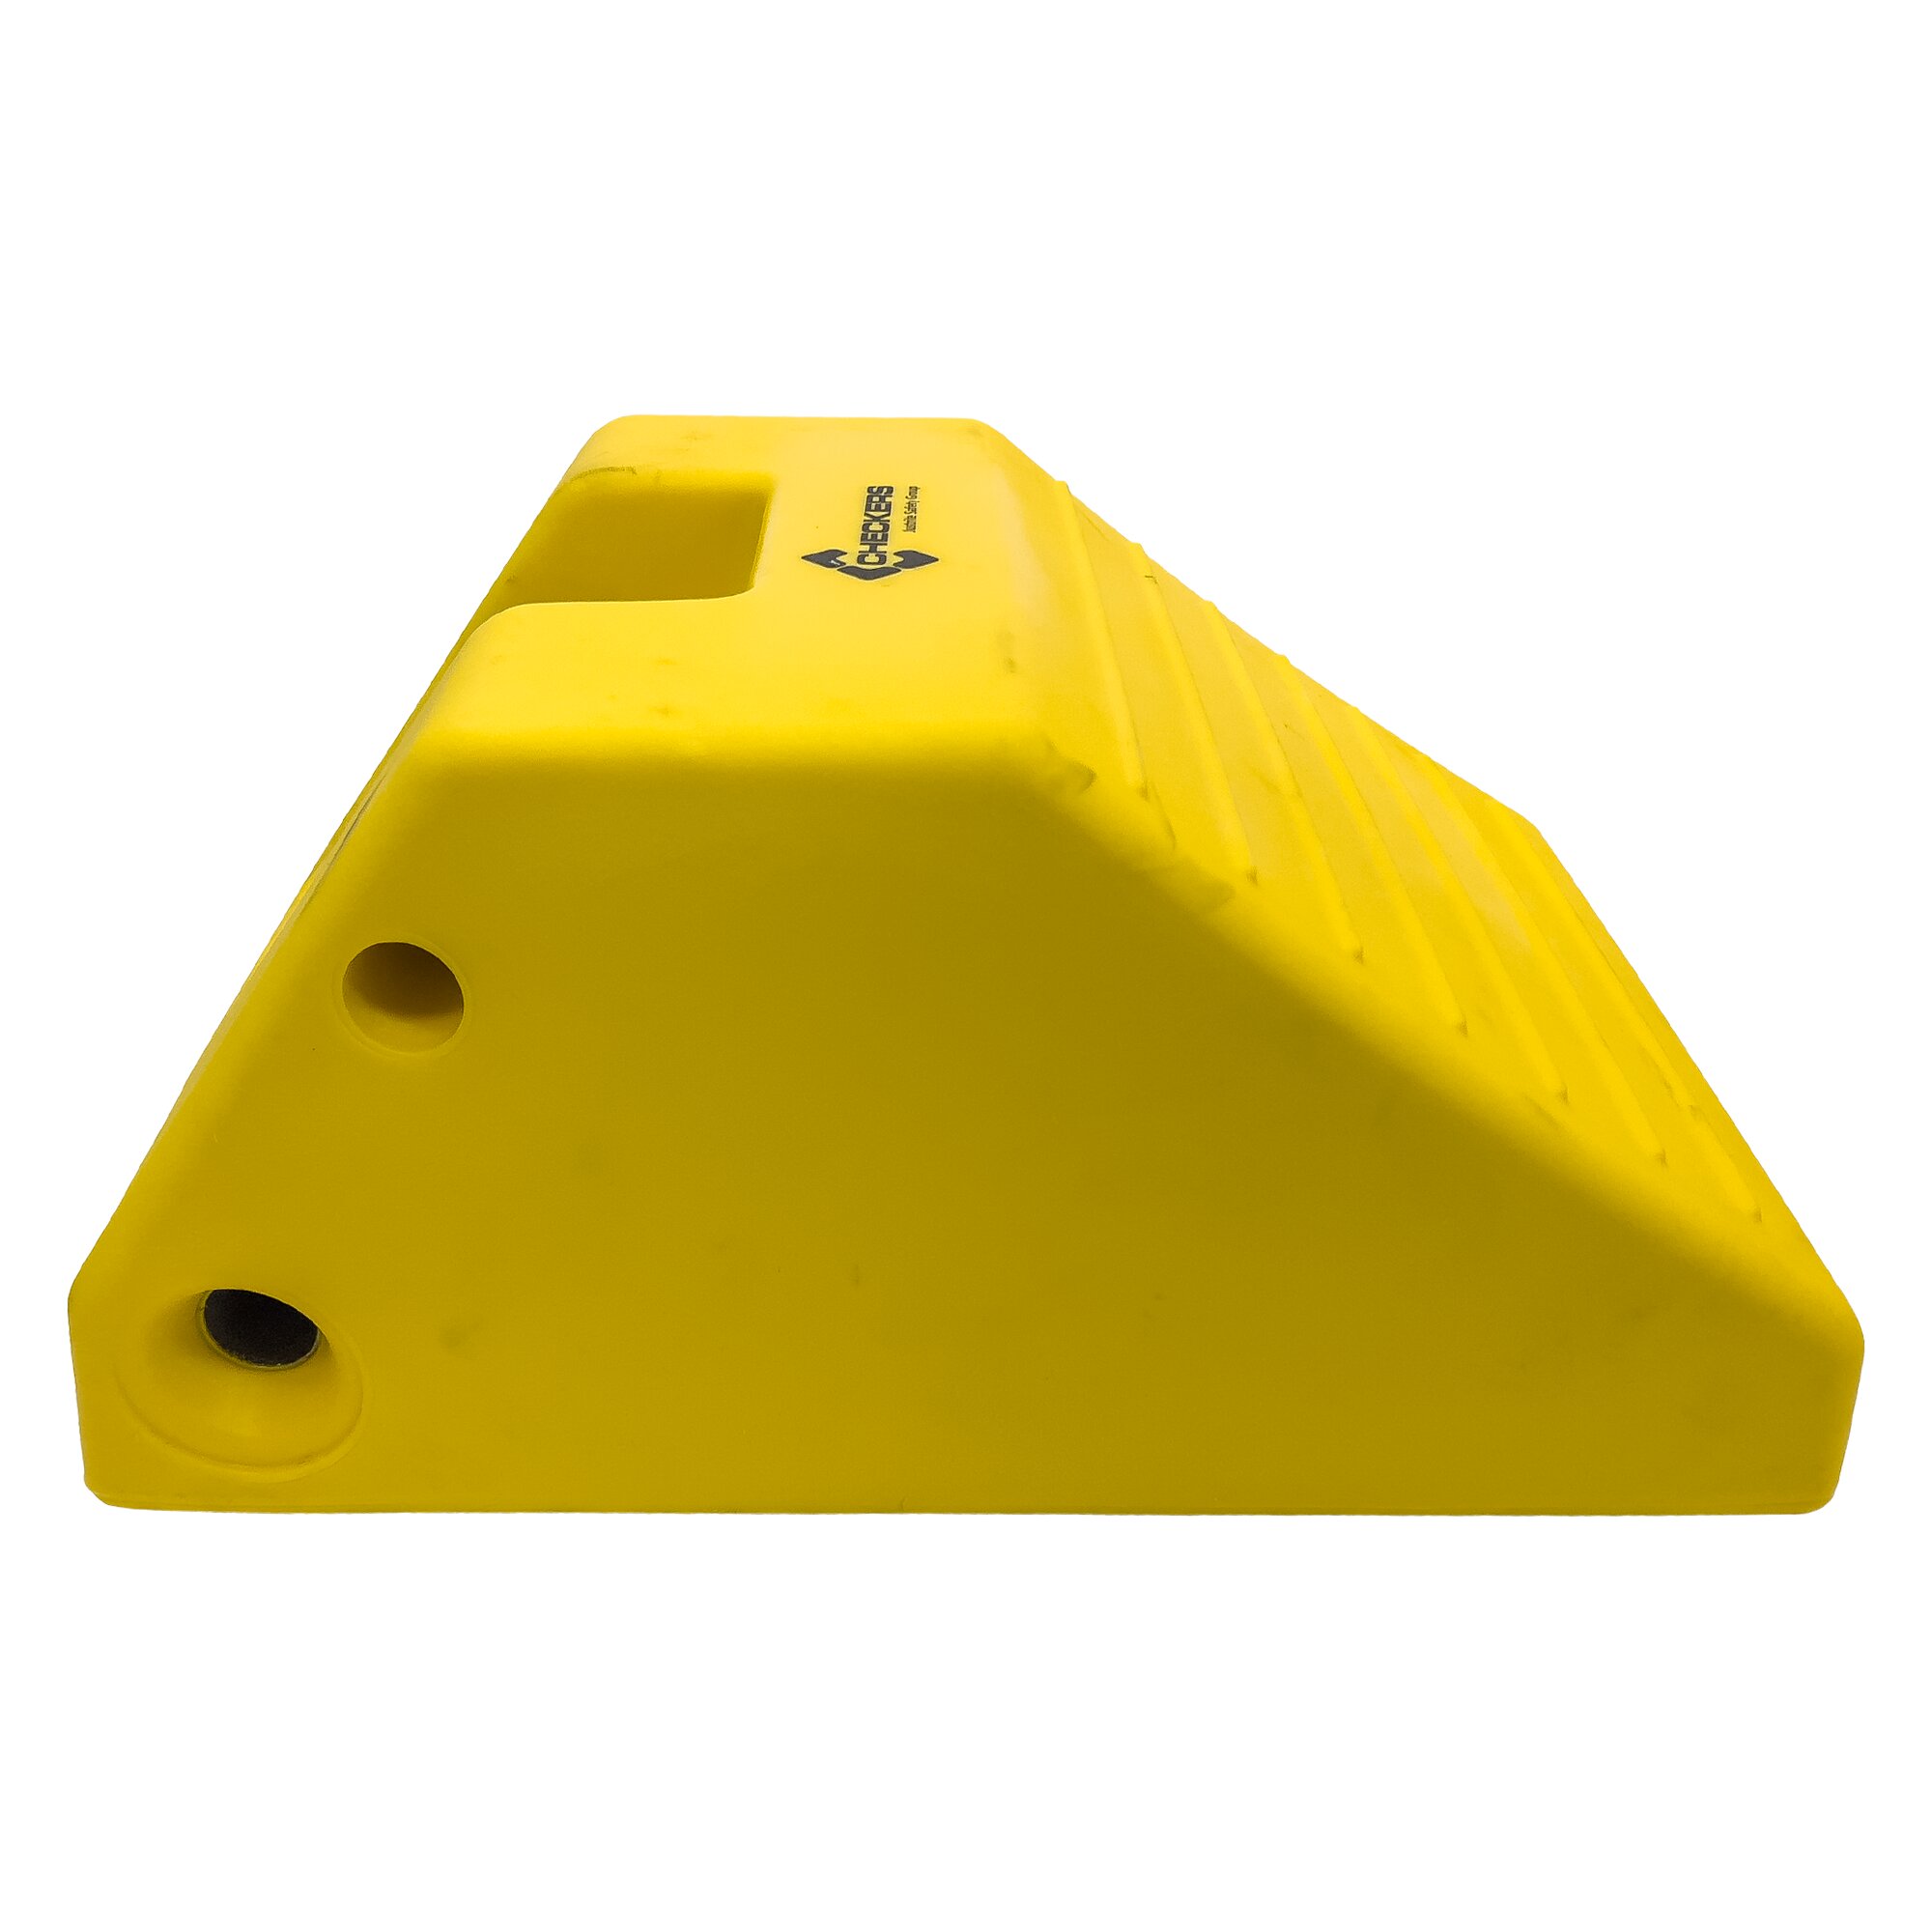 Žlutý plastový zakládací klín MC3012 - délka 56 cm, šířka 38 cm, výška 28 cm